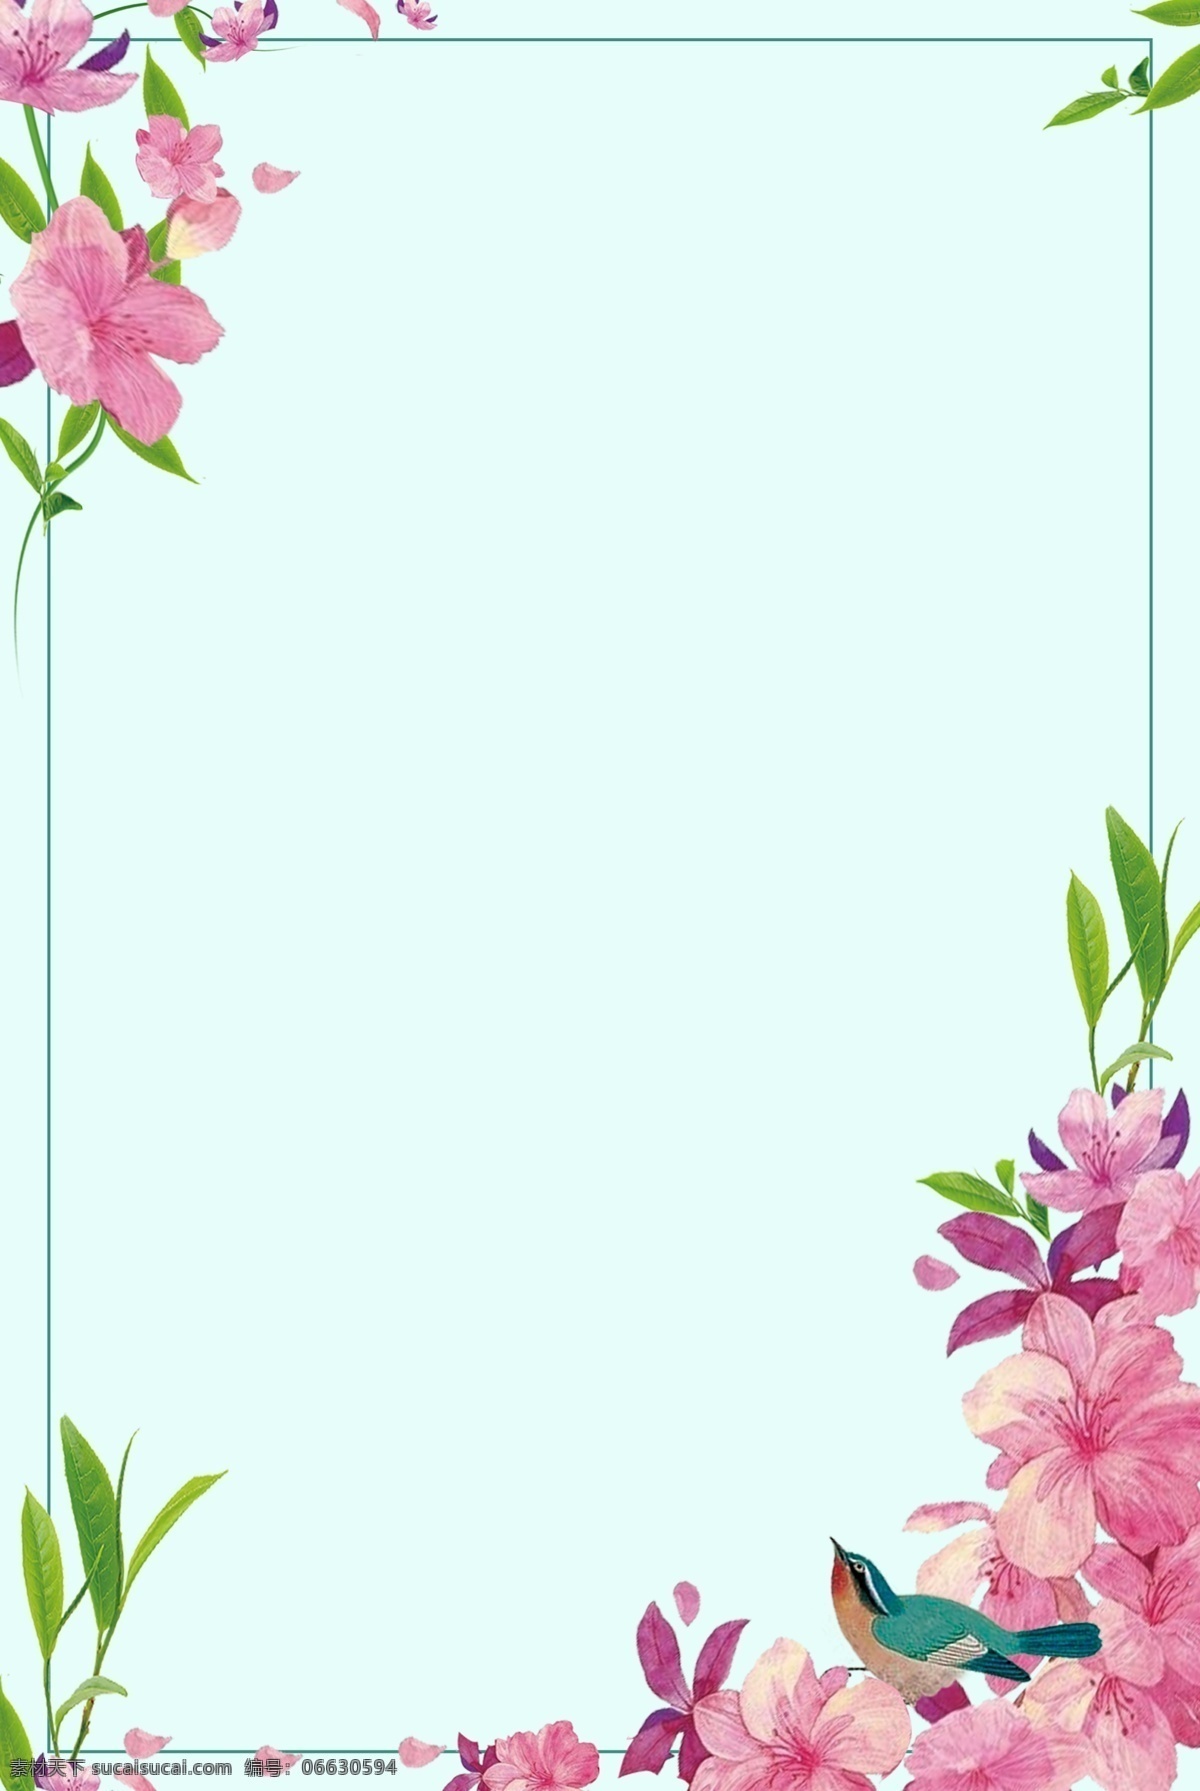 典雅 粉红 花朵 边框 背景 花朵边框 简约 素雅 文艺 植物 环境 自然 清新 叶子